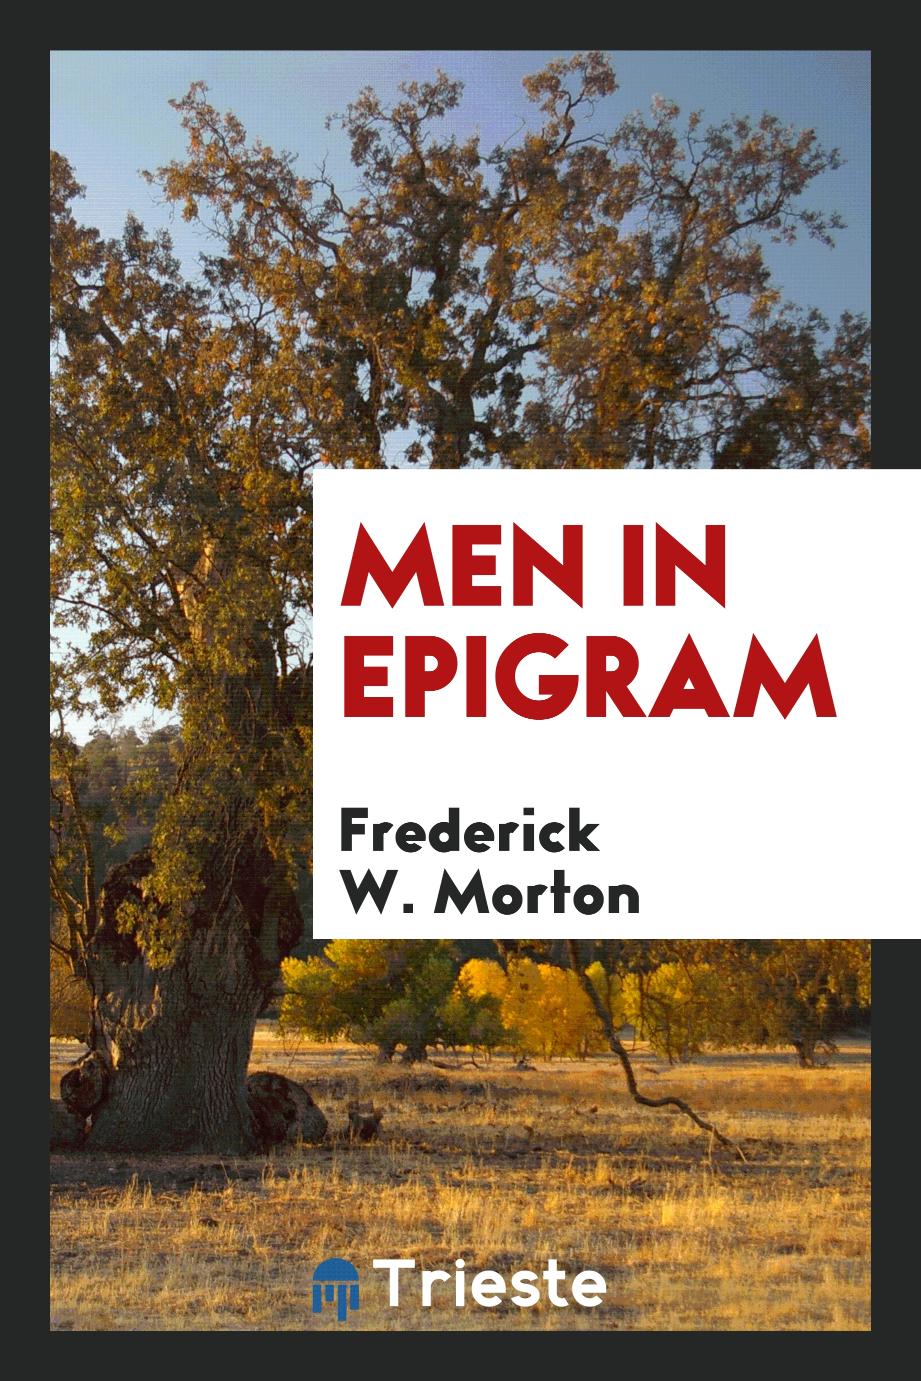 Men in epigram